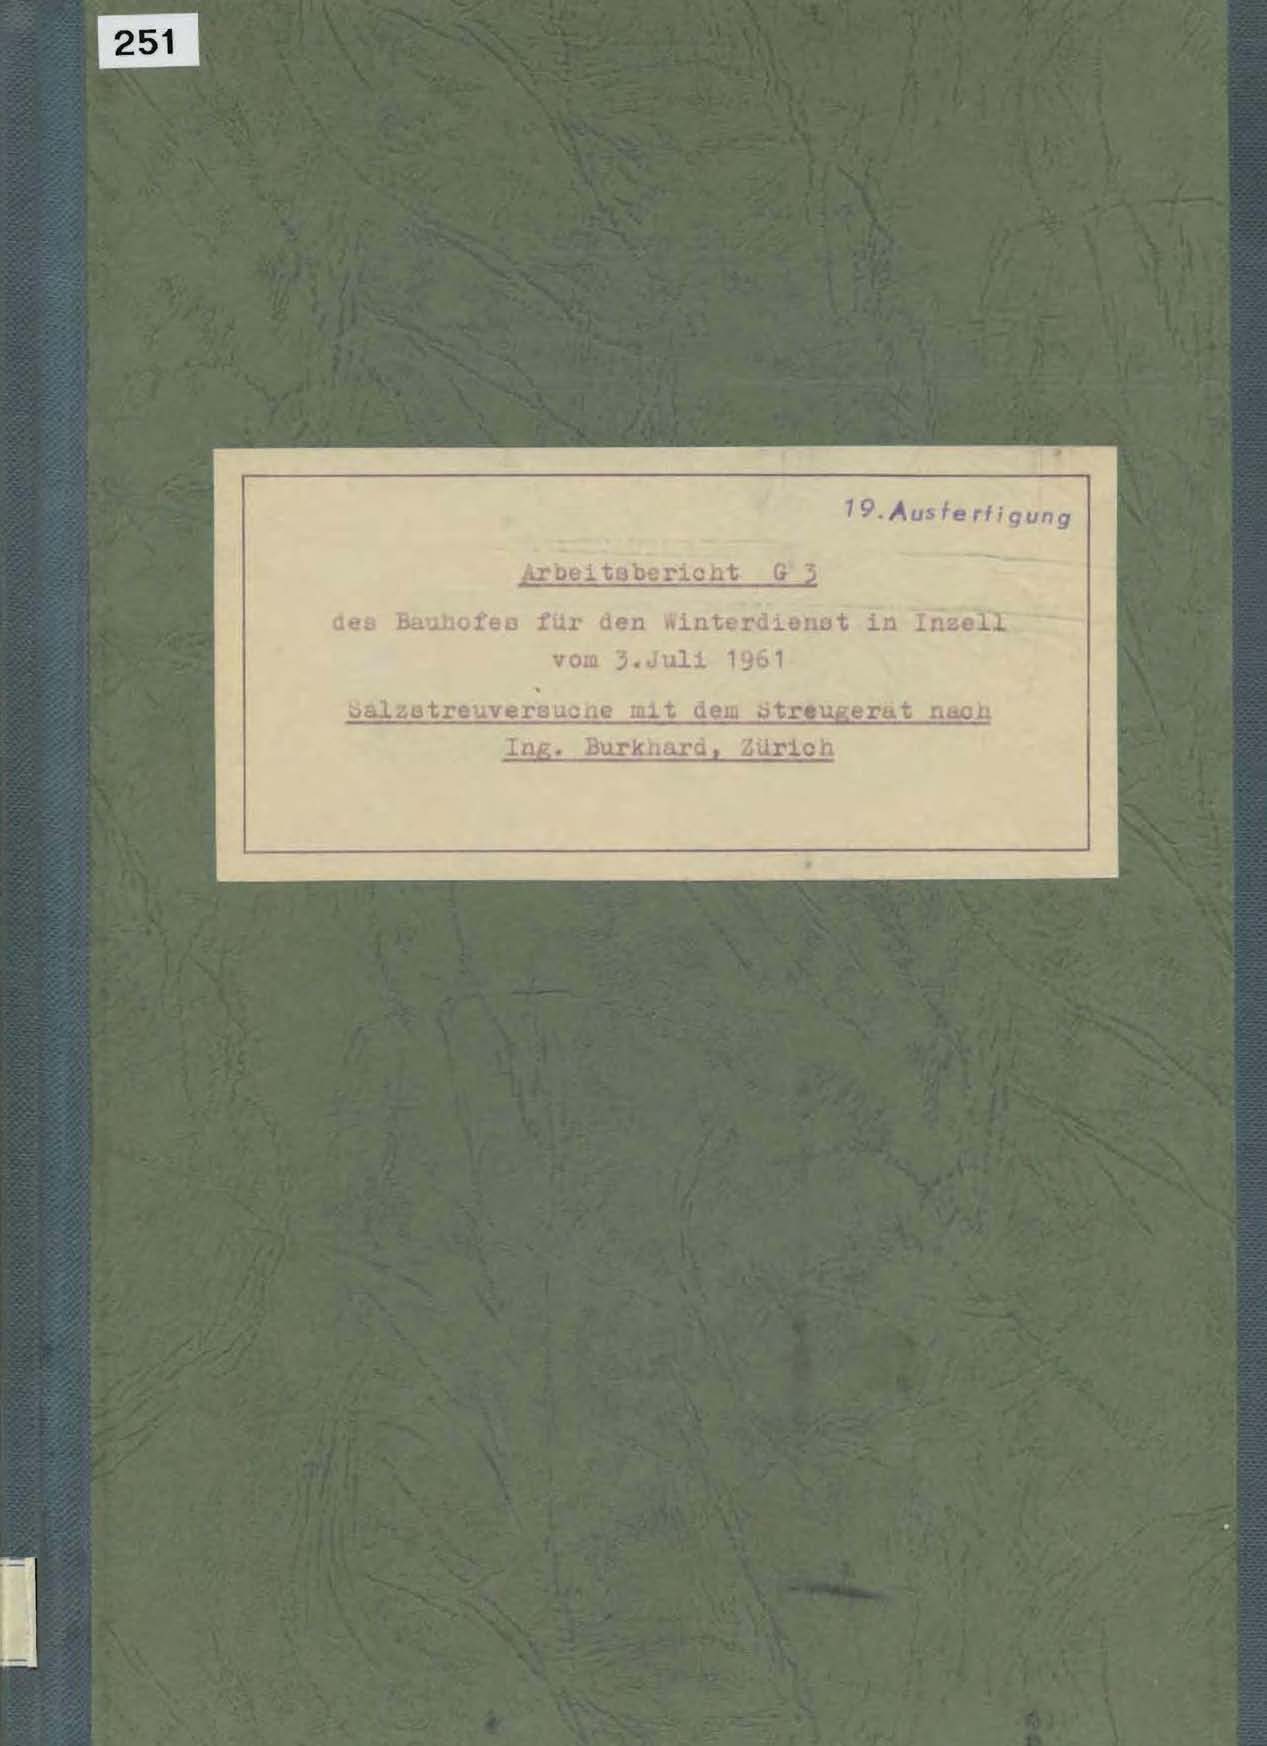 Arbeitsbericht G3 des Bauhofes für den Winterdienst in Inzell vom 3. Juli 1961